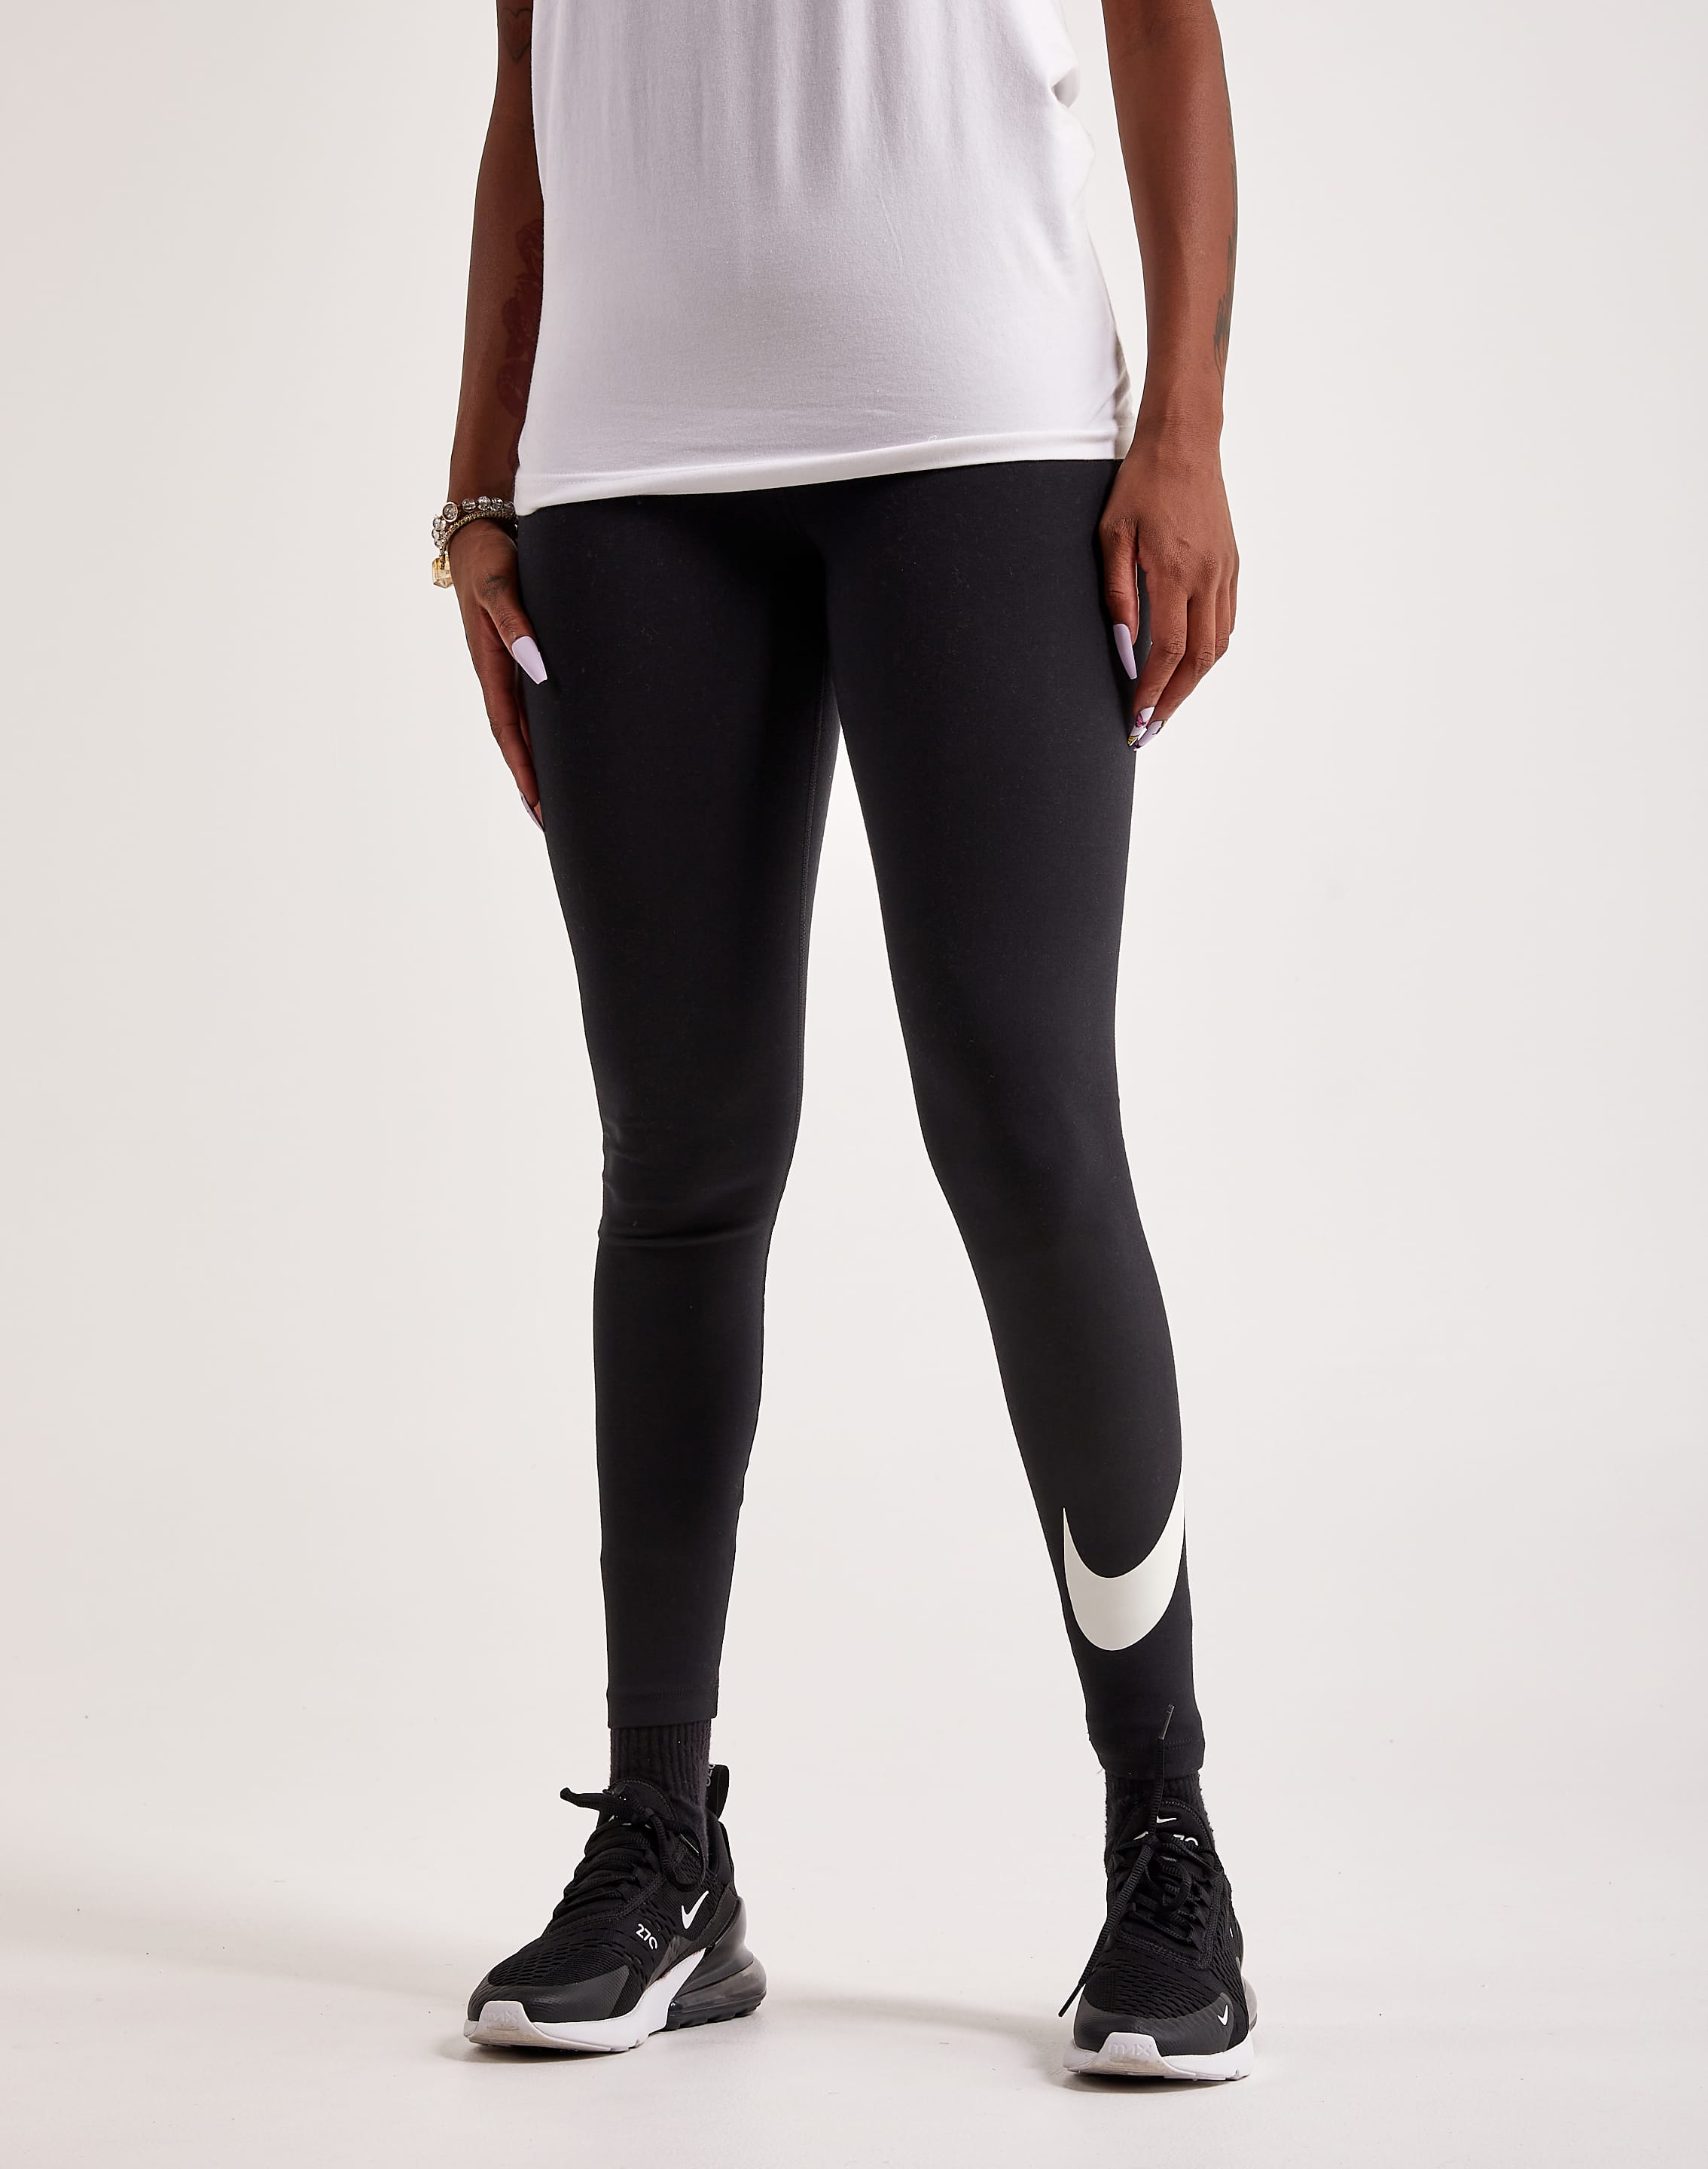 Nike Yoga Women's High-Waisted 7/8 Leggings. Nike IN